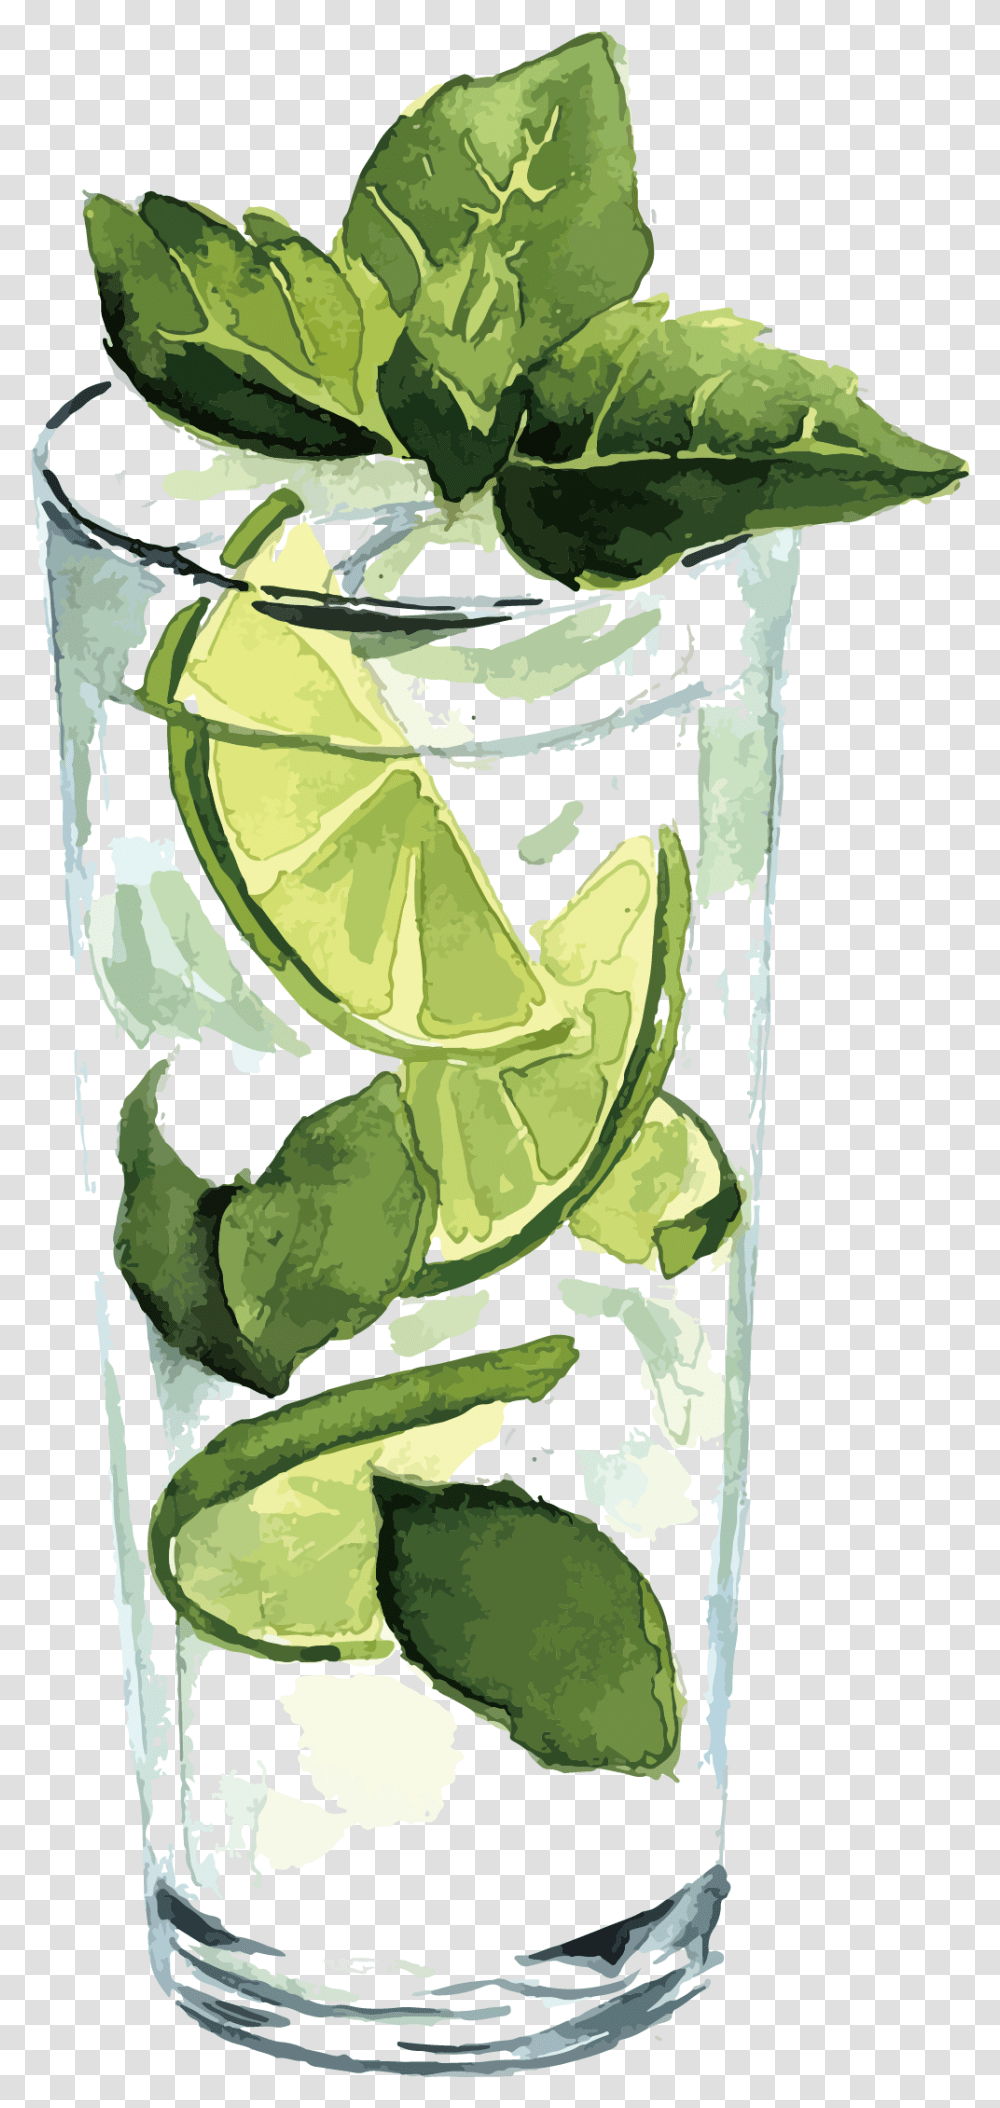 Lemon Juice Lemon Image & Lemon Clipart Lime Juice Clipart Watercolor, Plant, Food, Fruit, Citrus Fruit Transparent Png